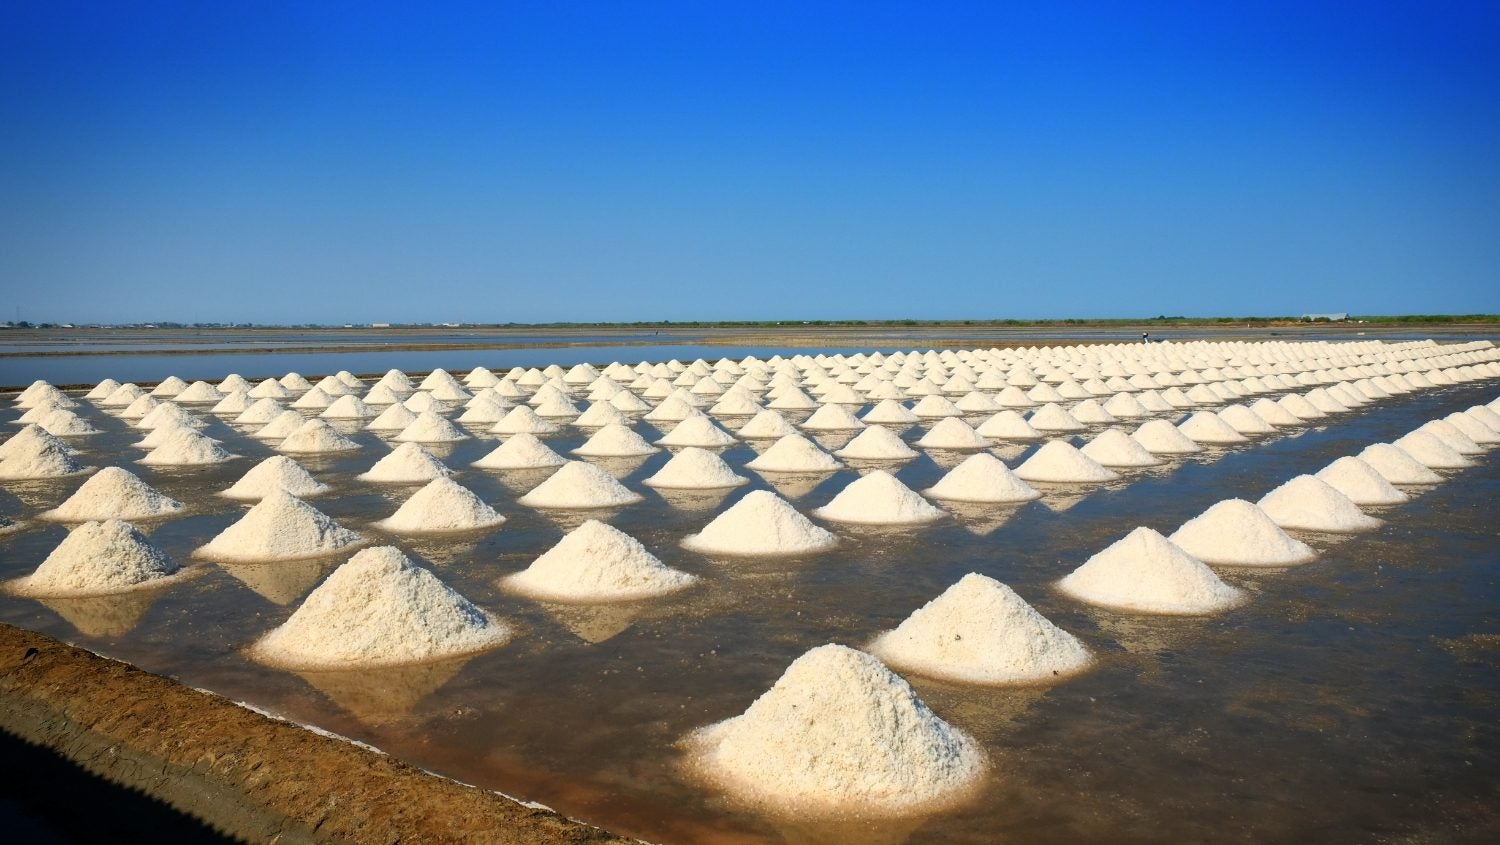 Wide-frame image of salt fields